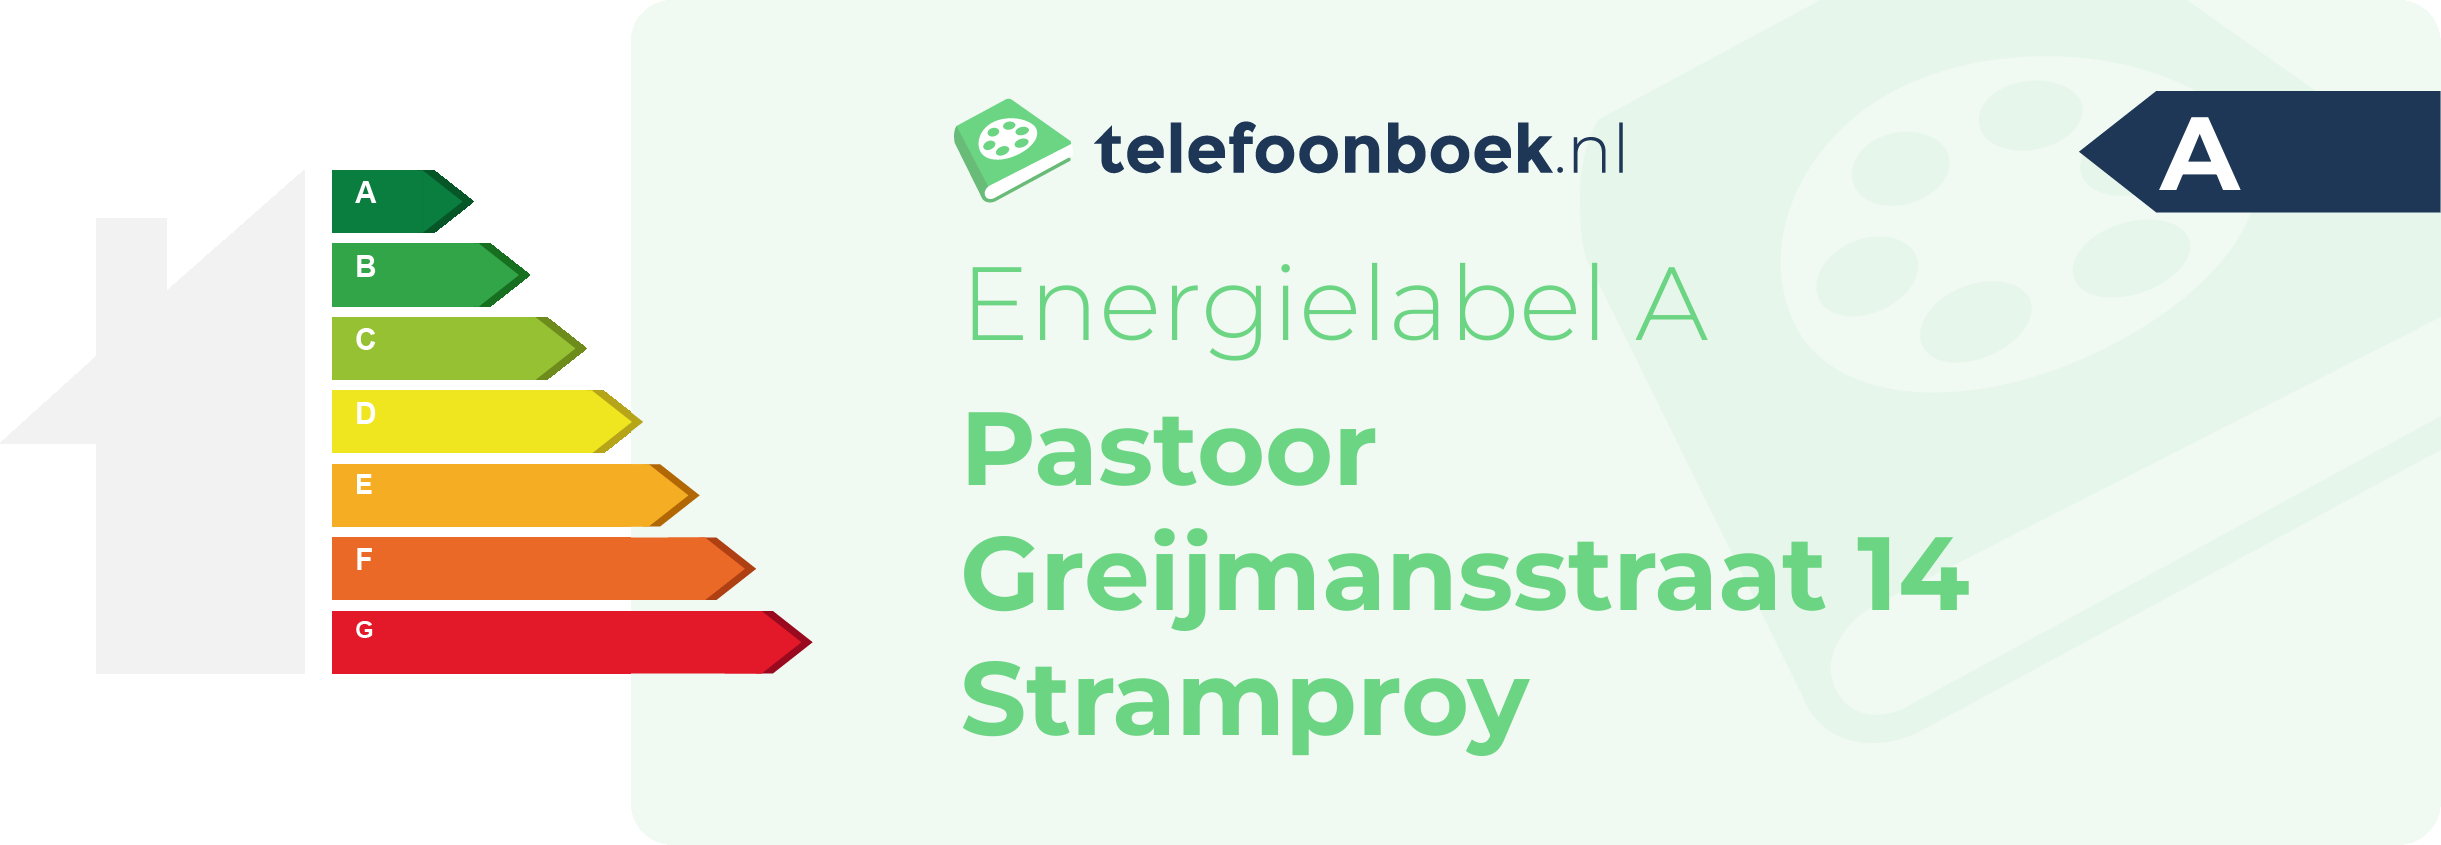 Energielabel Pastoor Greijmansstraat 14 Stramproy